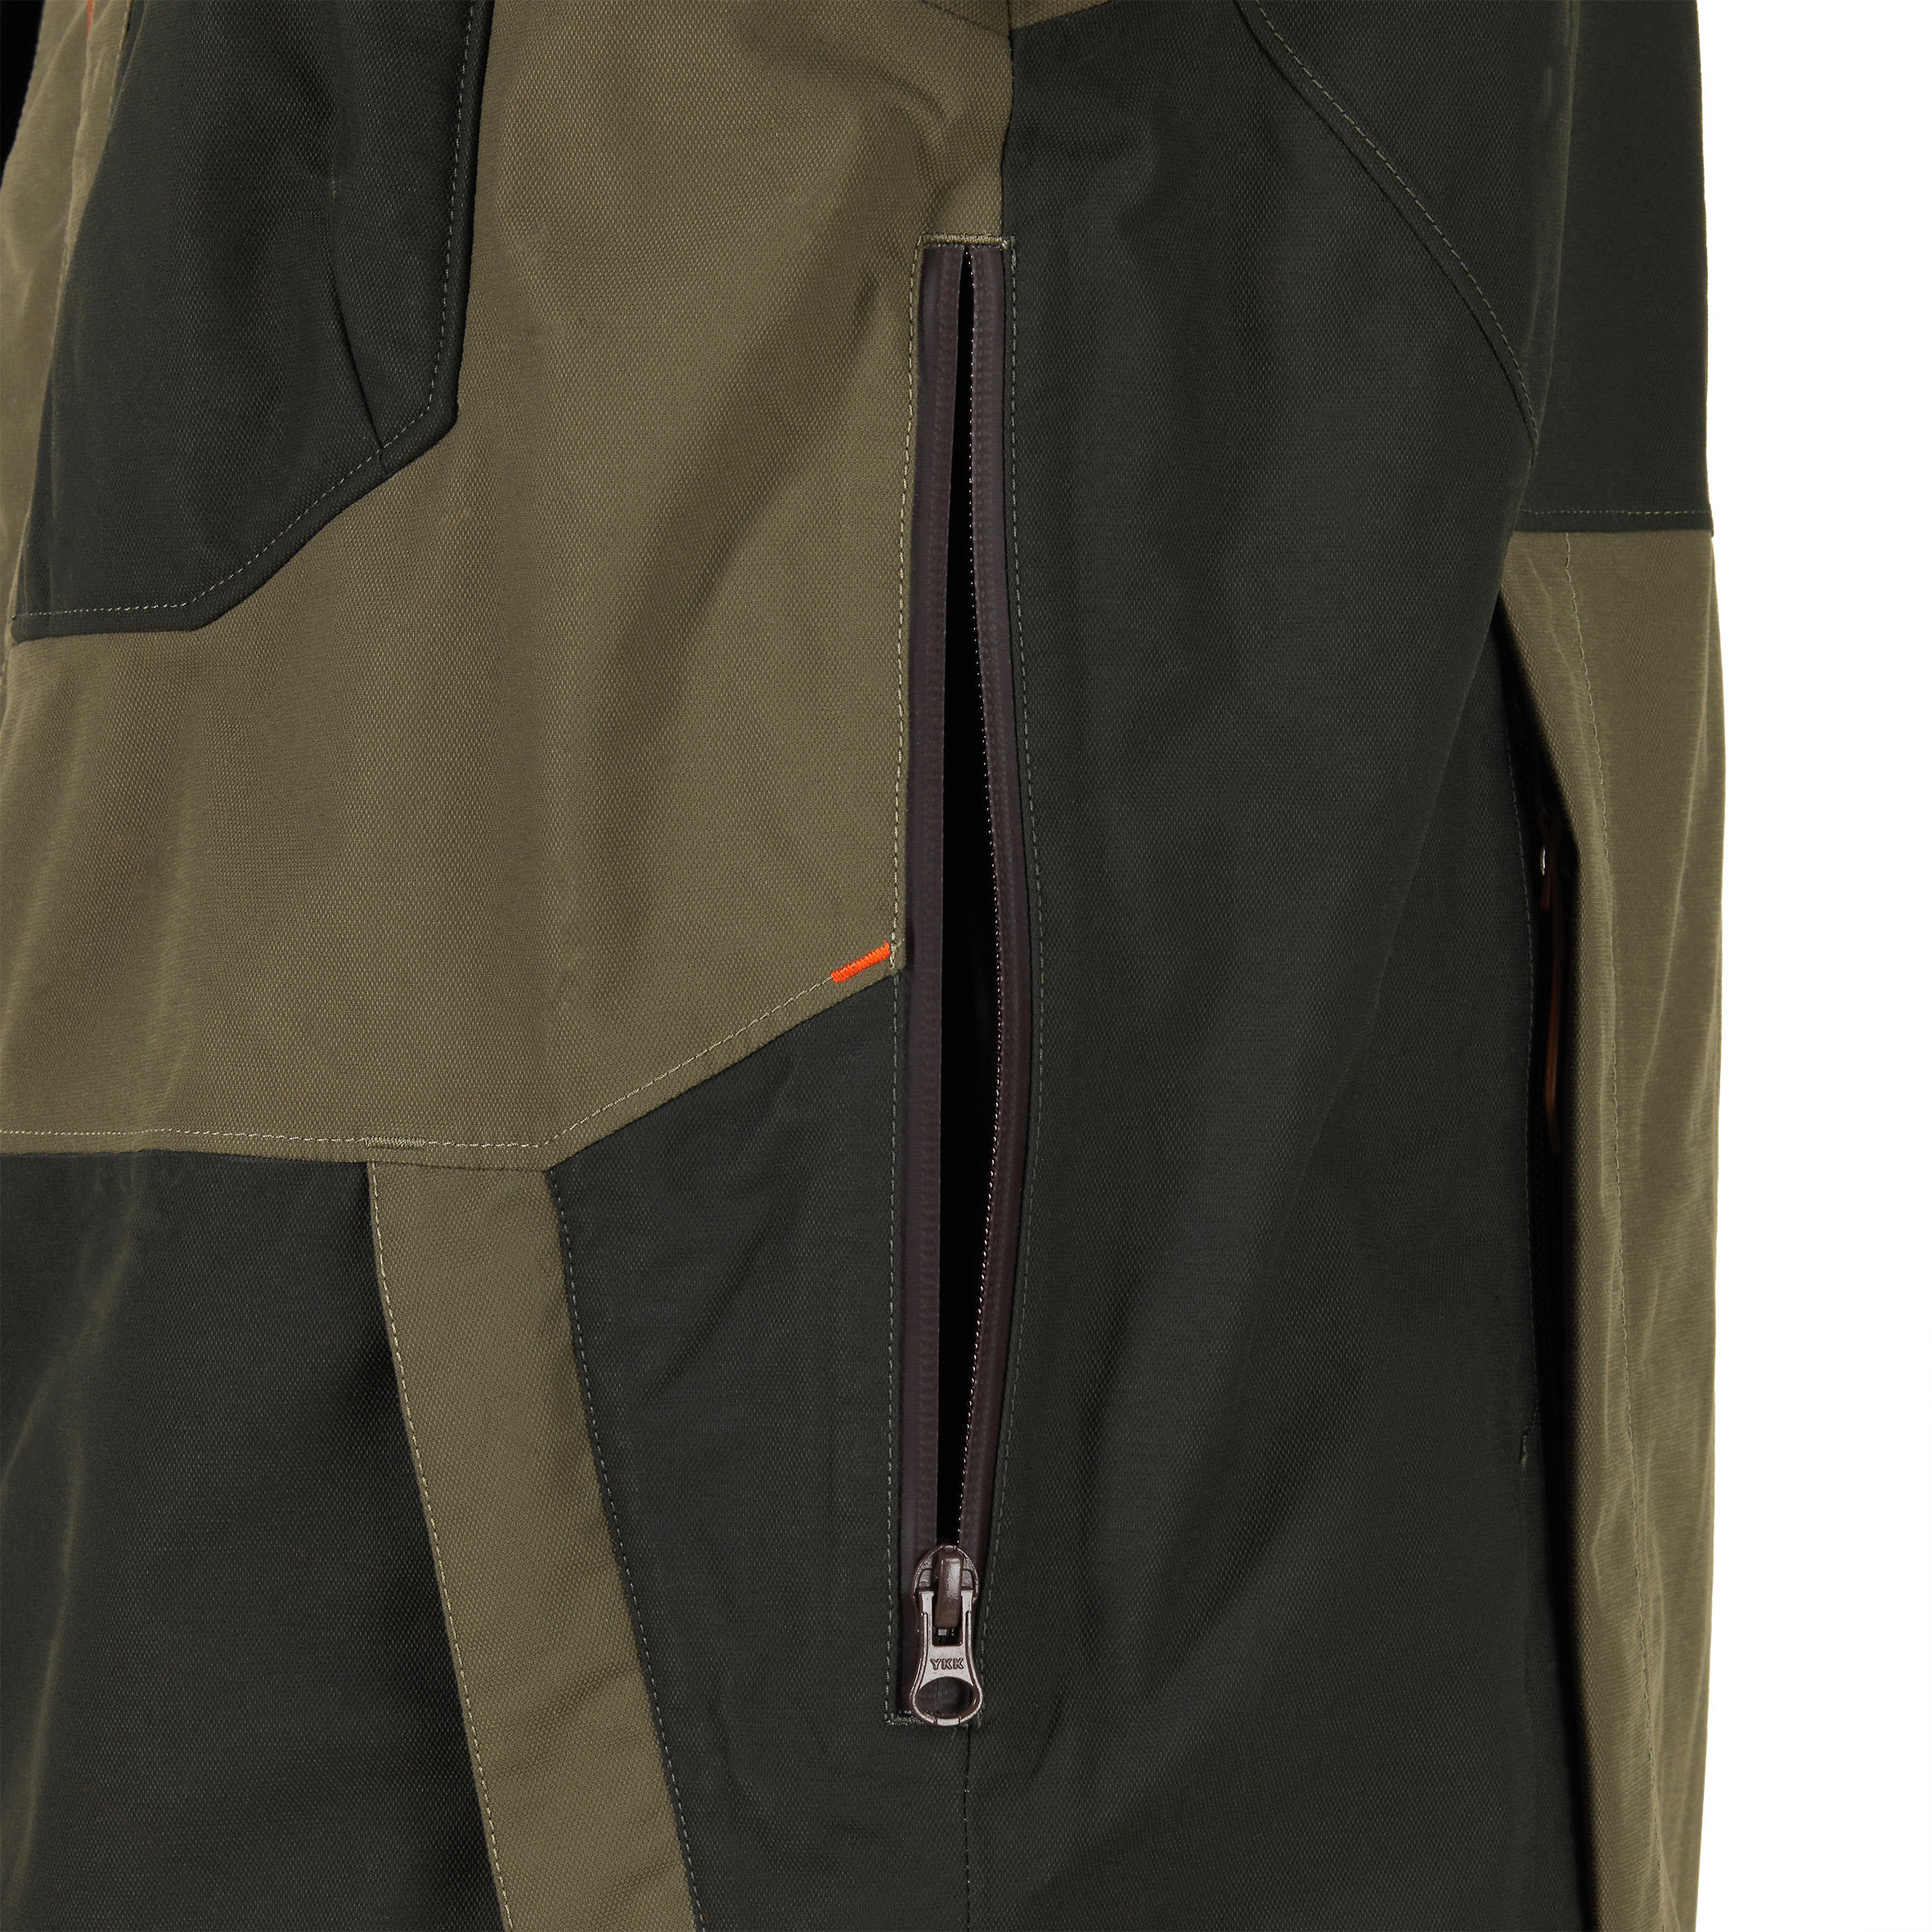 Reinforced Waterproof Jacket - Brown 14/21